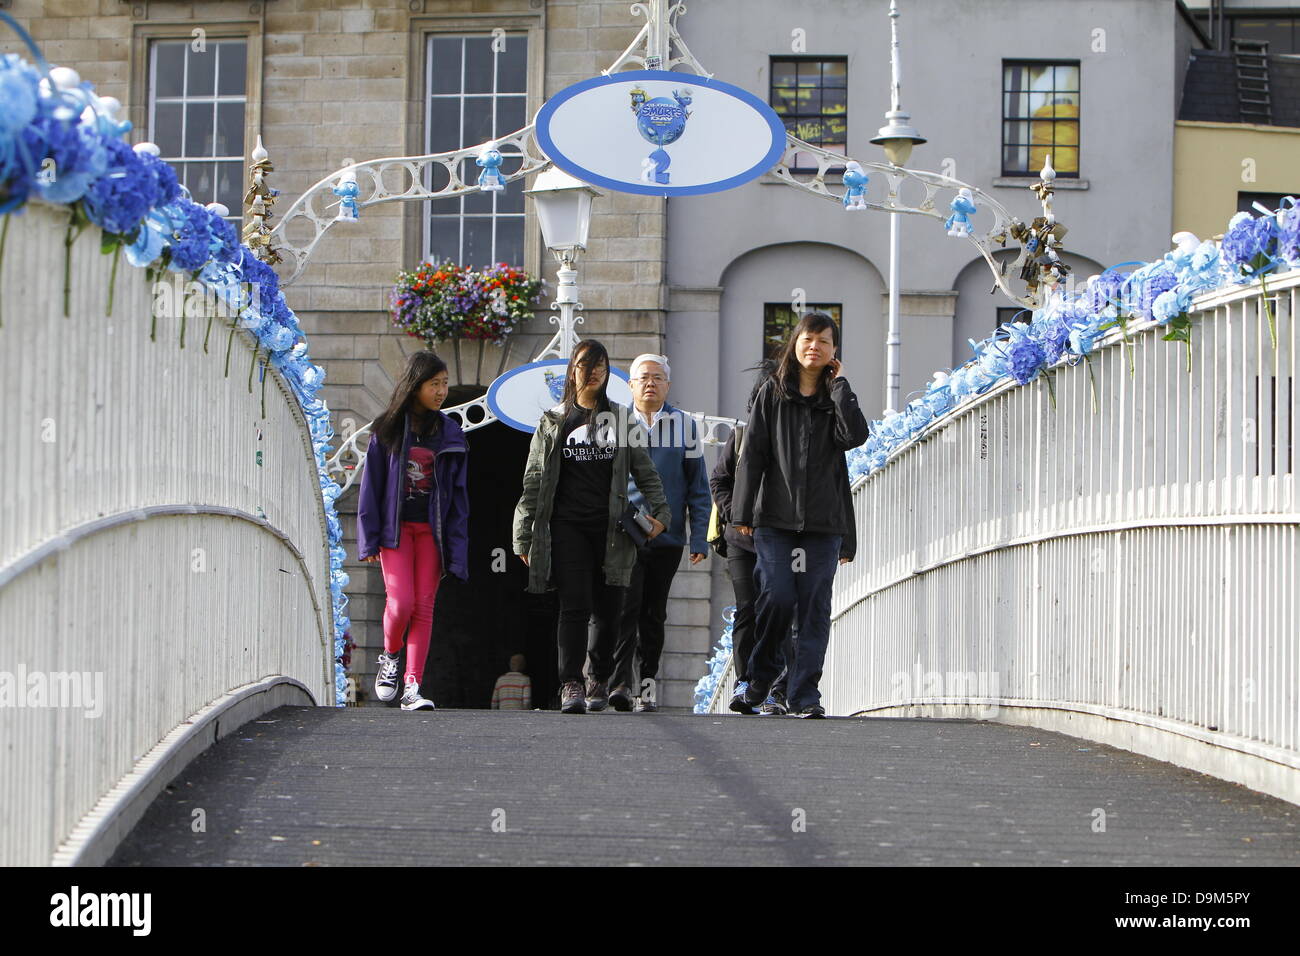 Dublin, Irlande. 22 juin 2013. Les touristes à pied sur le Ha'penny Bridge, qui est décoré avec des fleurs bleues et peu de figurines Schtroumpf Schtroumpfs mondial 24. Acteurs habillés comme le Grand Schtroumpf et Schtroumpfette posés à la Dublin's Ha'penny Bridge dans une promotion pour le prochain "Les Schtroumpfs 2" film. La photo téléphonique a eu lieu sur les Schtroumpfs, jour qui est célébrée autour de l'anniversaire du créateur des Schtroumpfs Payo. Crédit : Michael Debets/Alamy Live News Banque D'Images